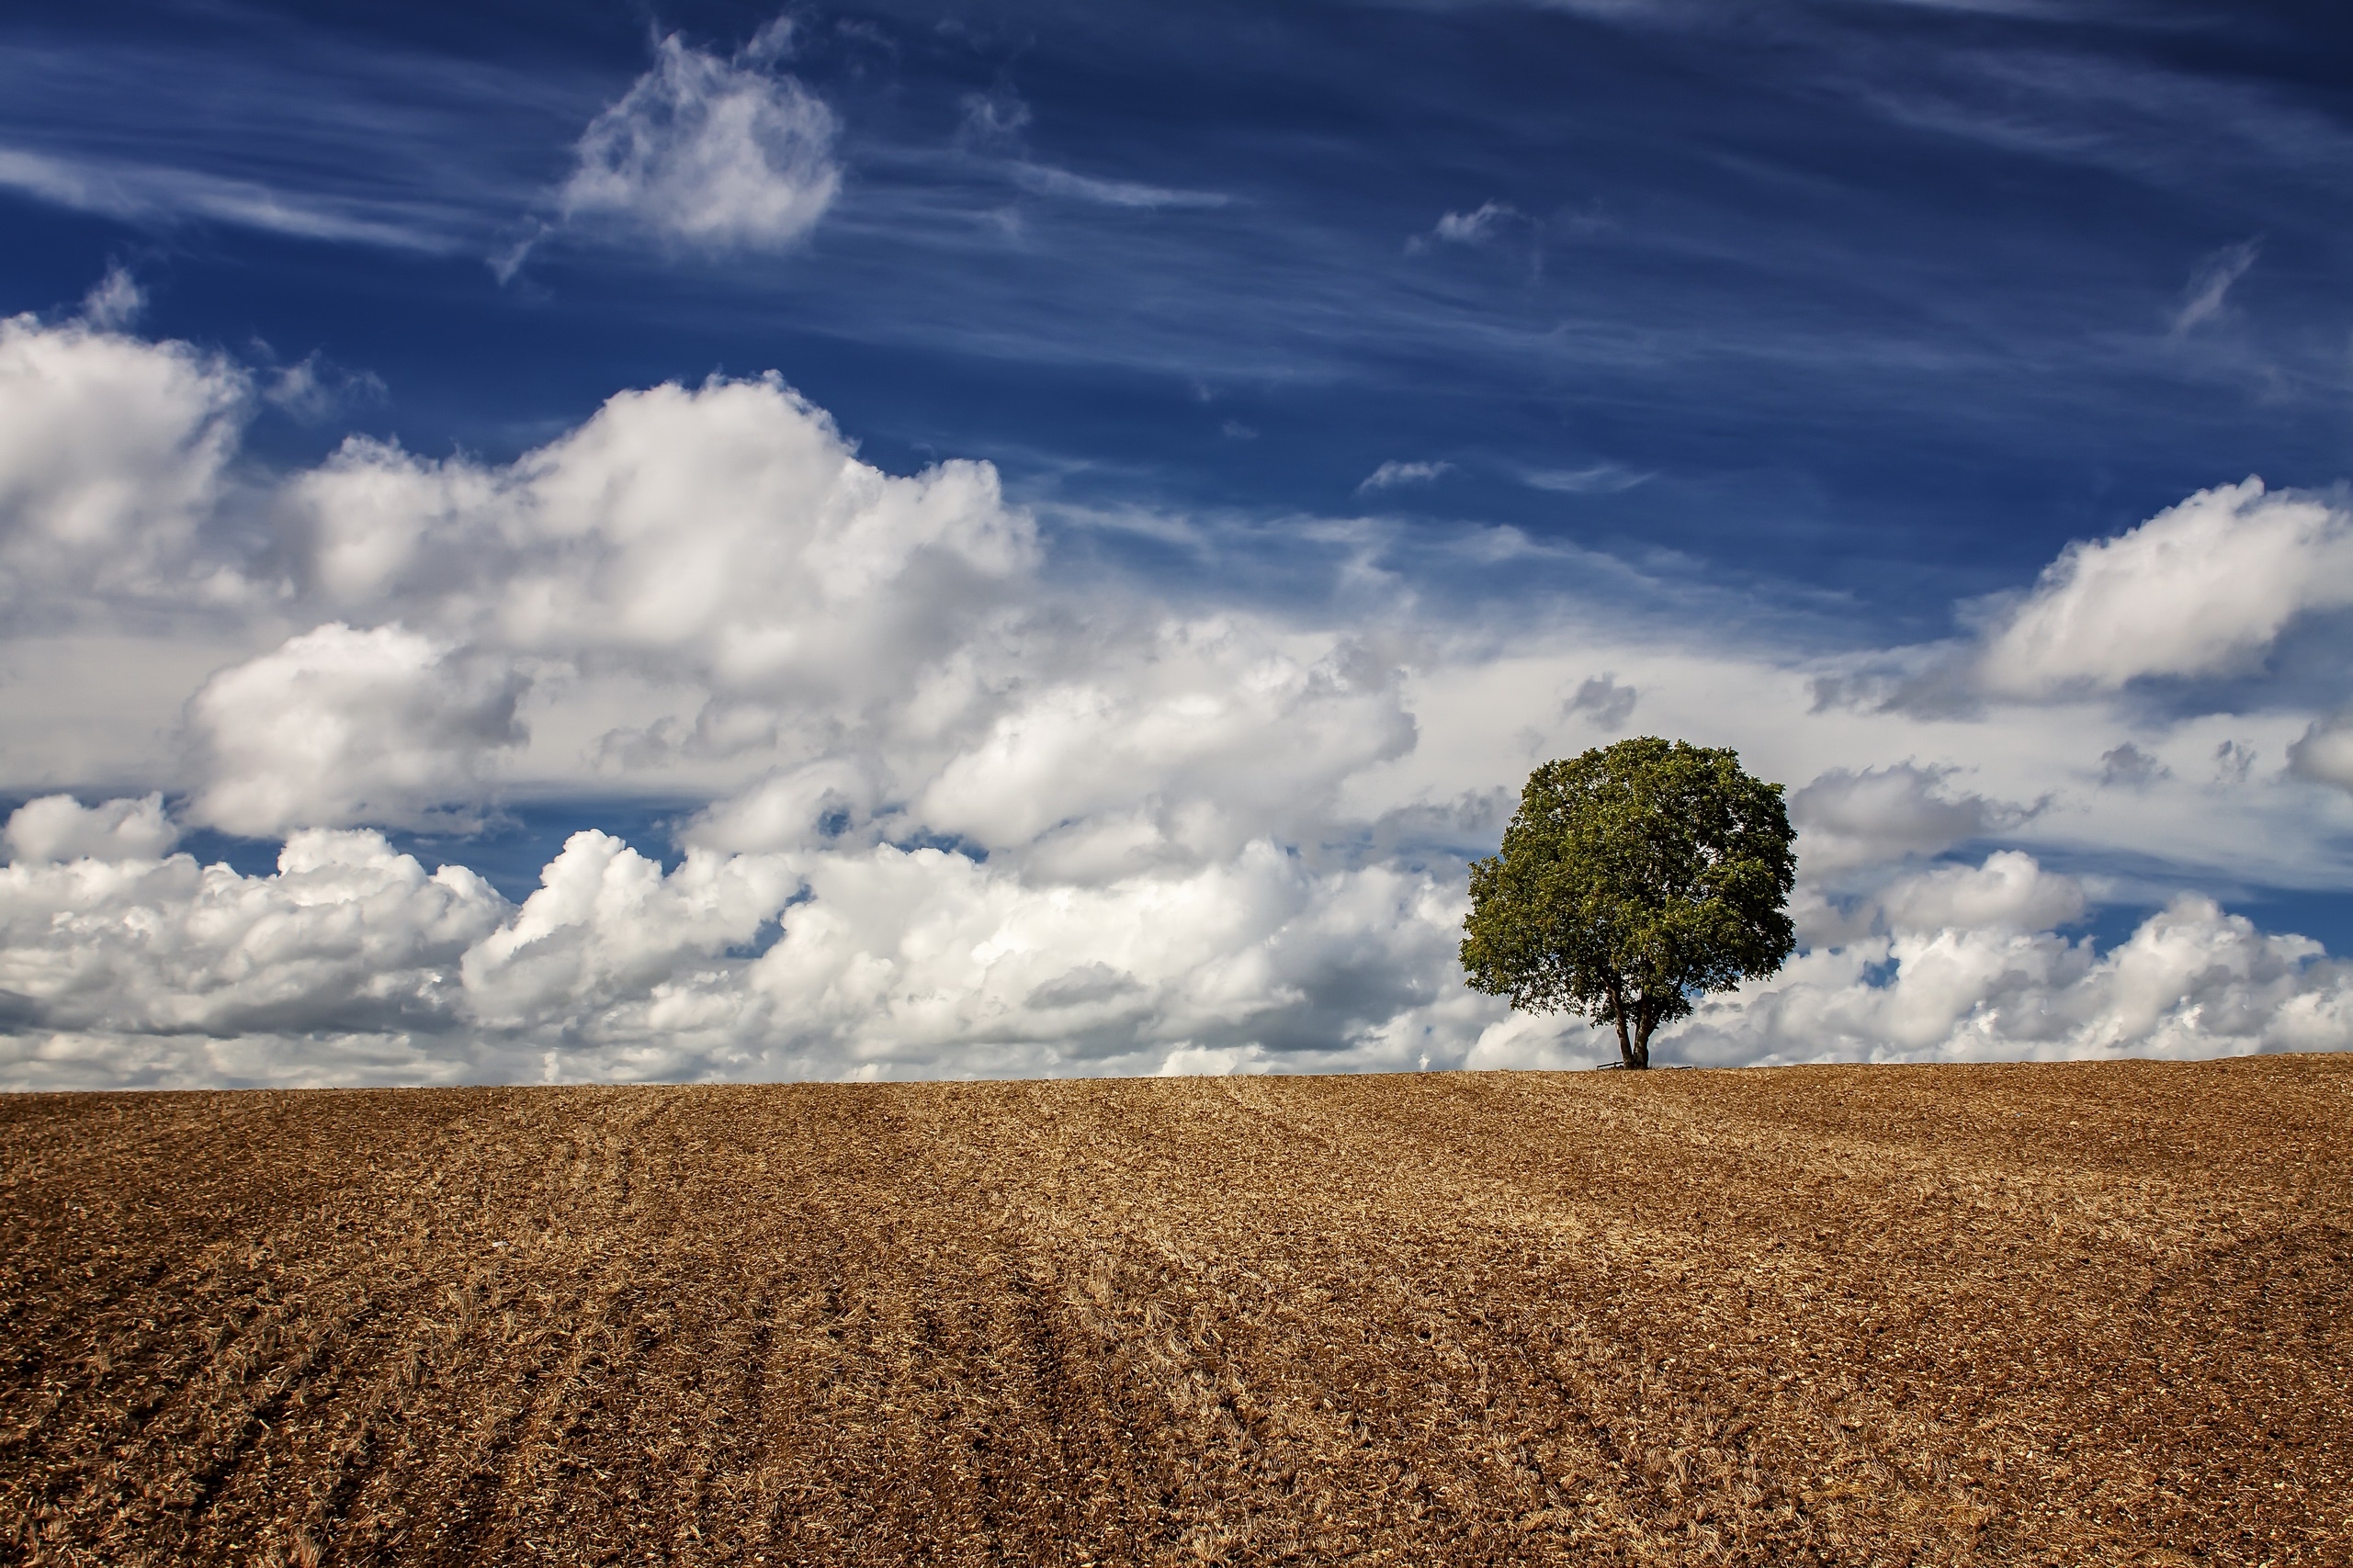 田野里的一棵孤树和天空中的羽毛状云朵